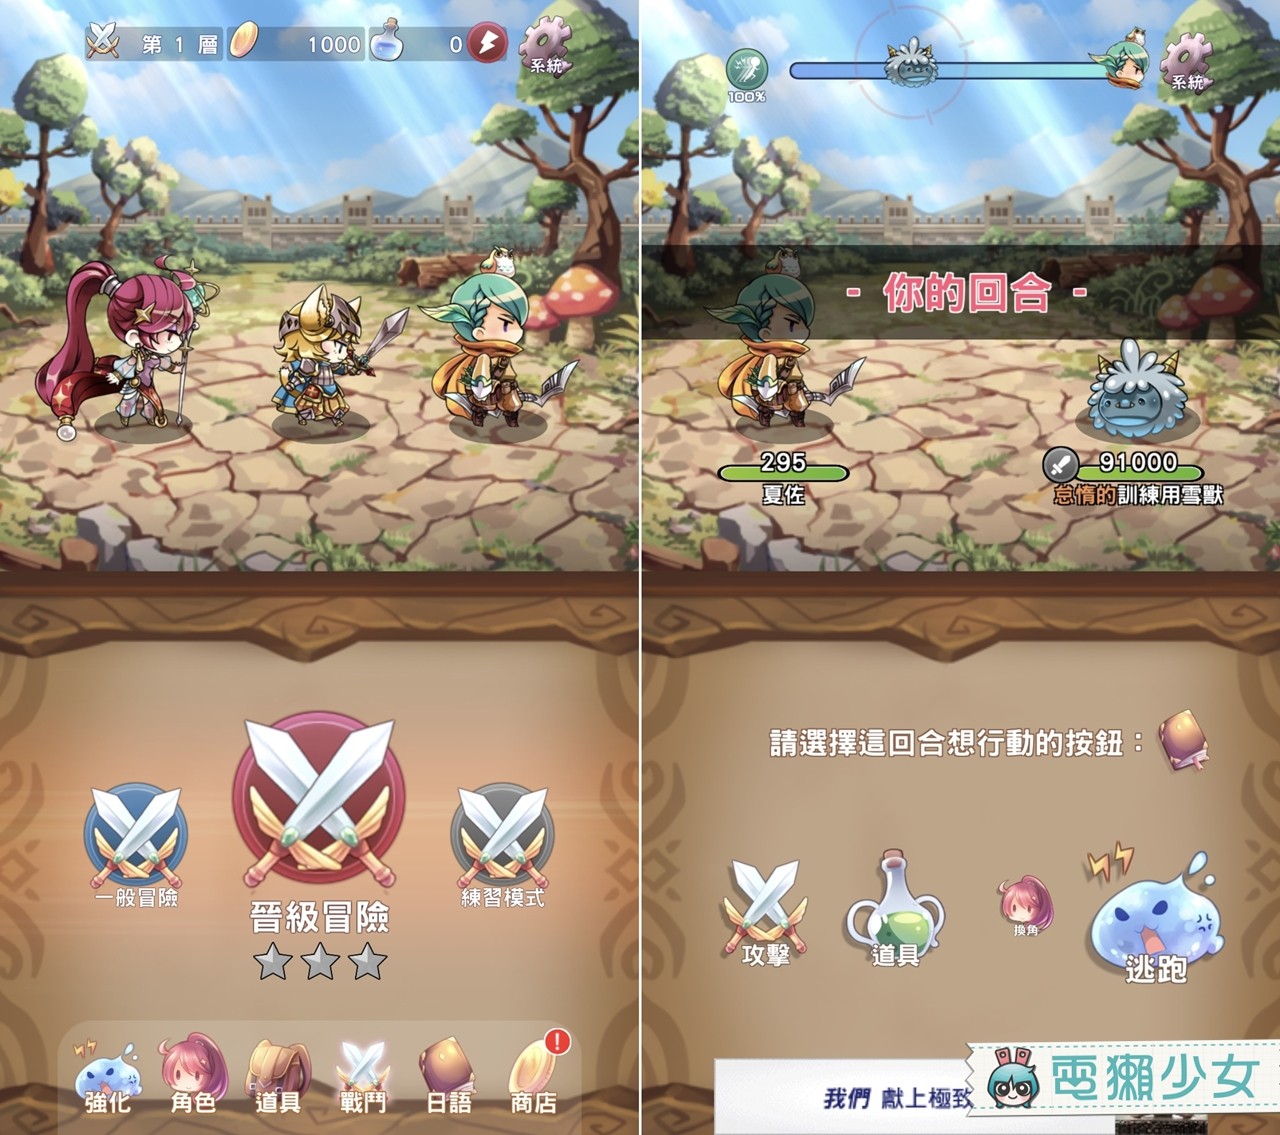 玩遊戲學日文『 日語50音-初心の冒險 』不小心就通通記起來了！Android / iOS